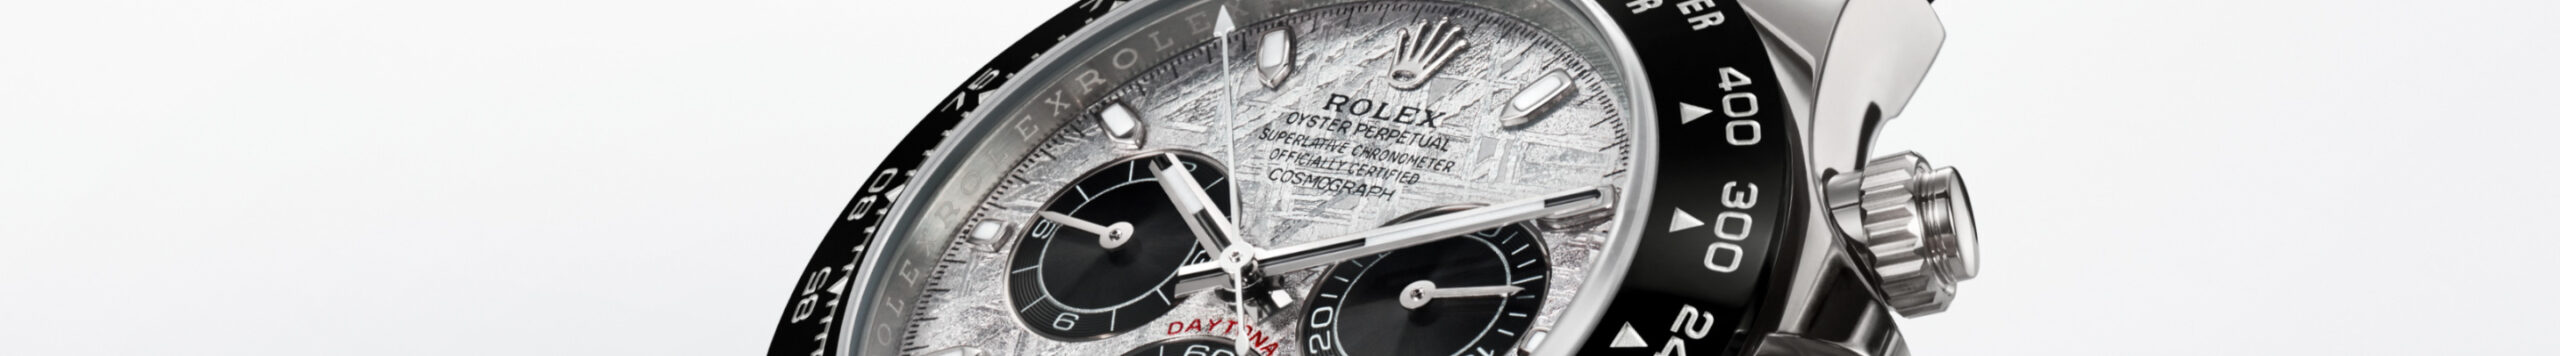 Colección Rolex